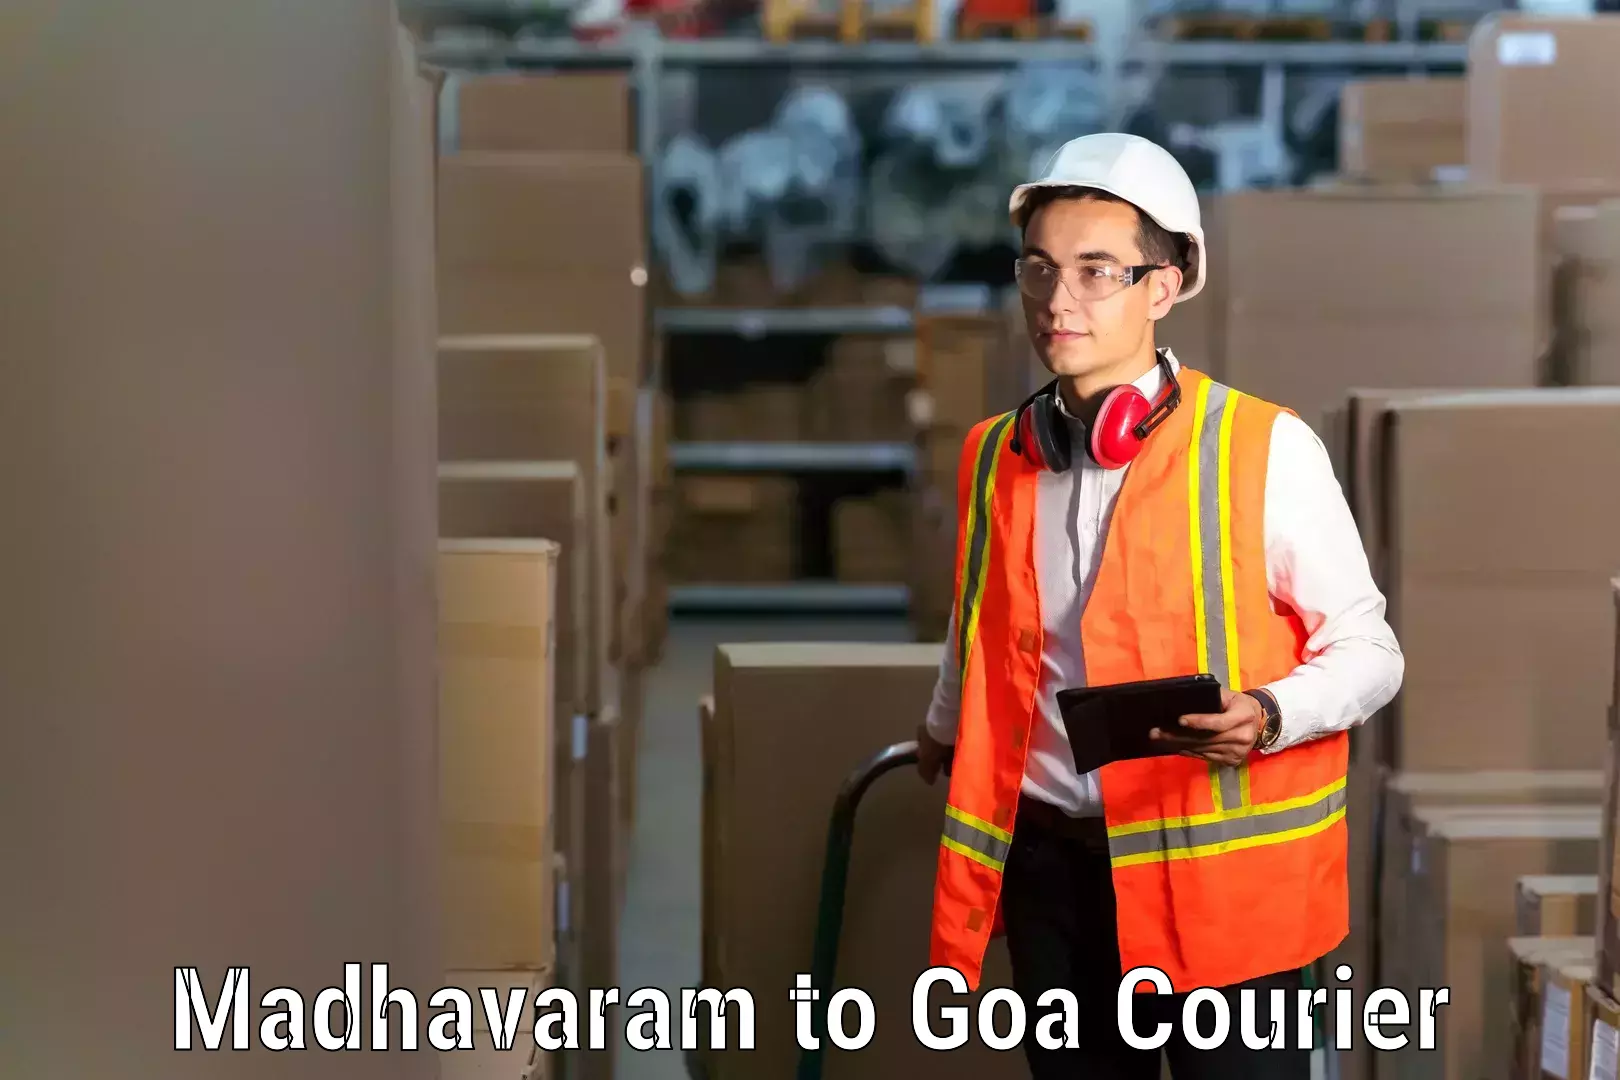 Expert moving and storage Madhavaram to IIT Goa